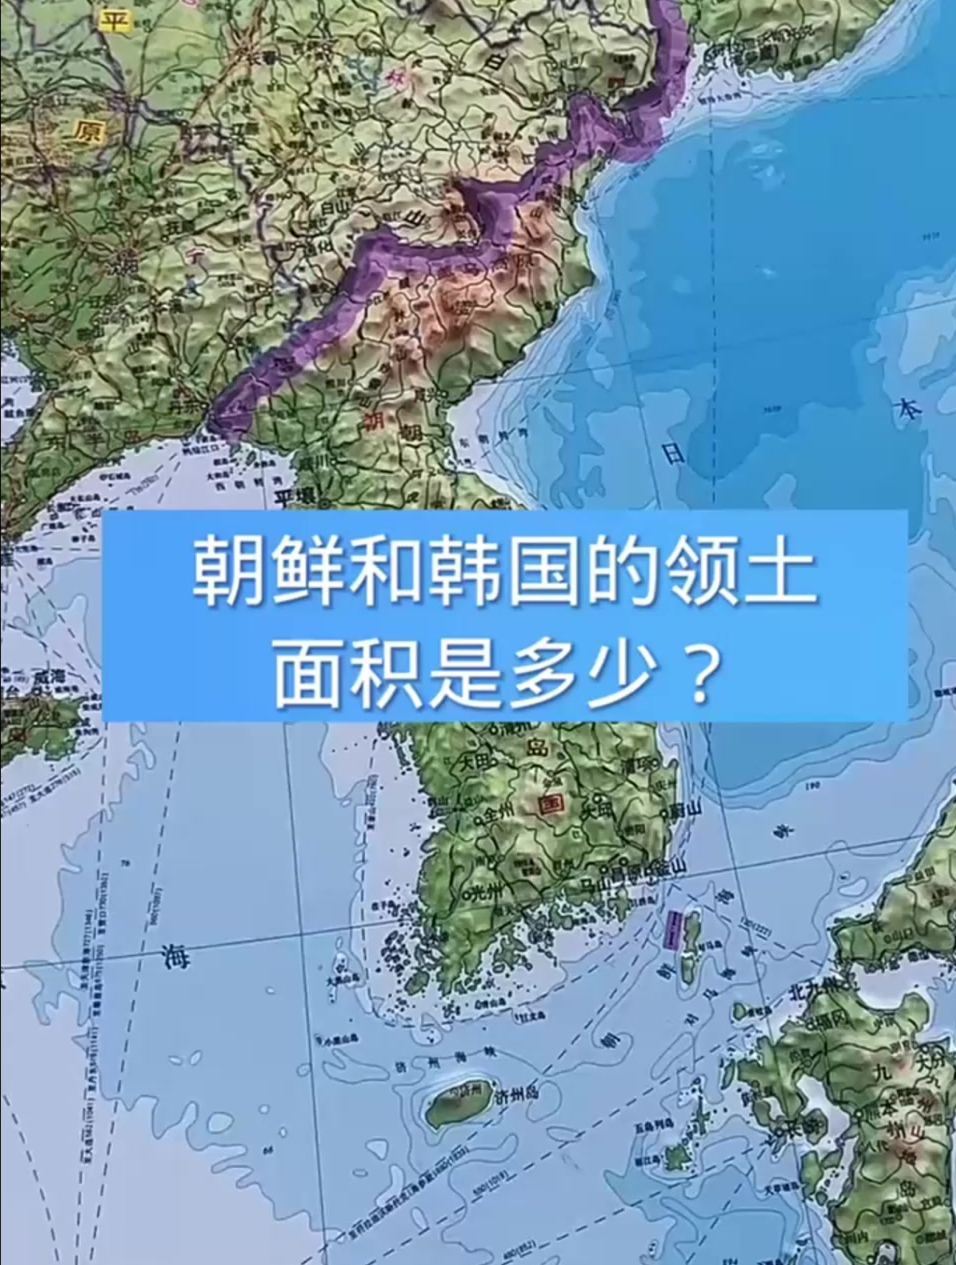 朝鲜和韩国的领土面积是多少?